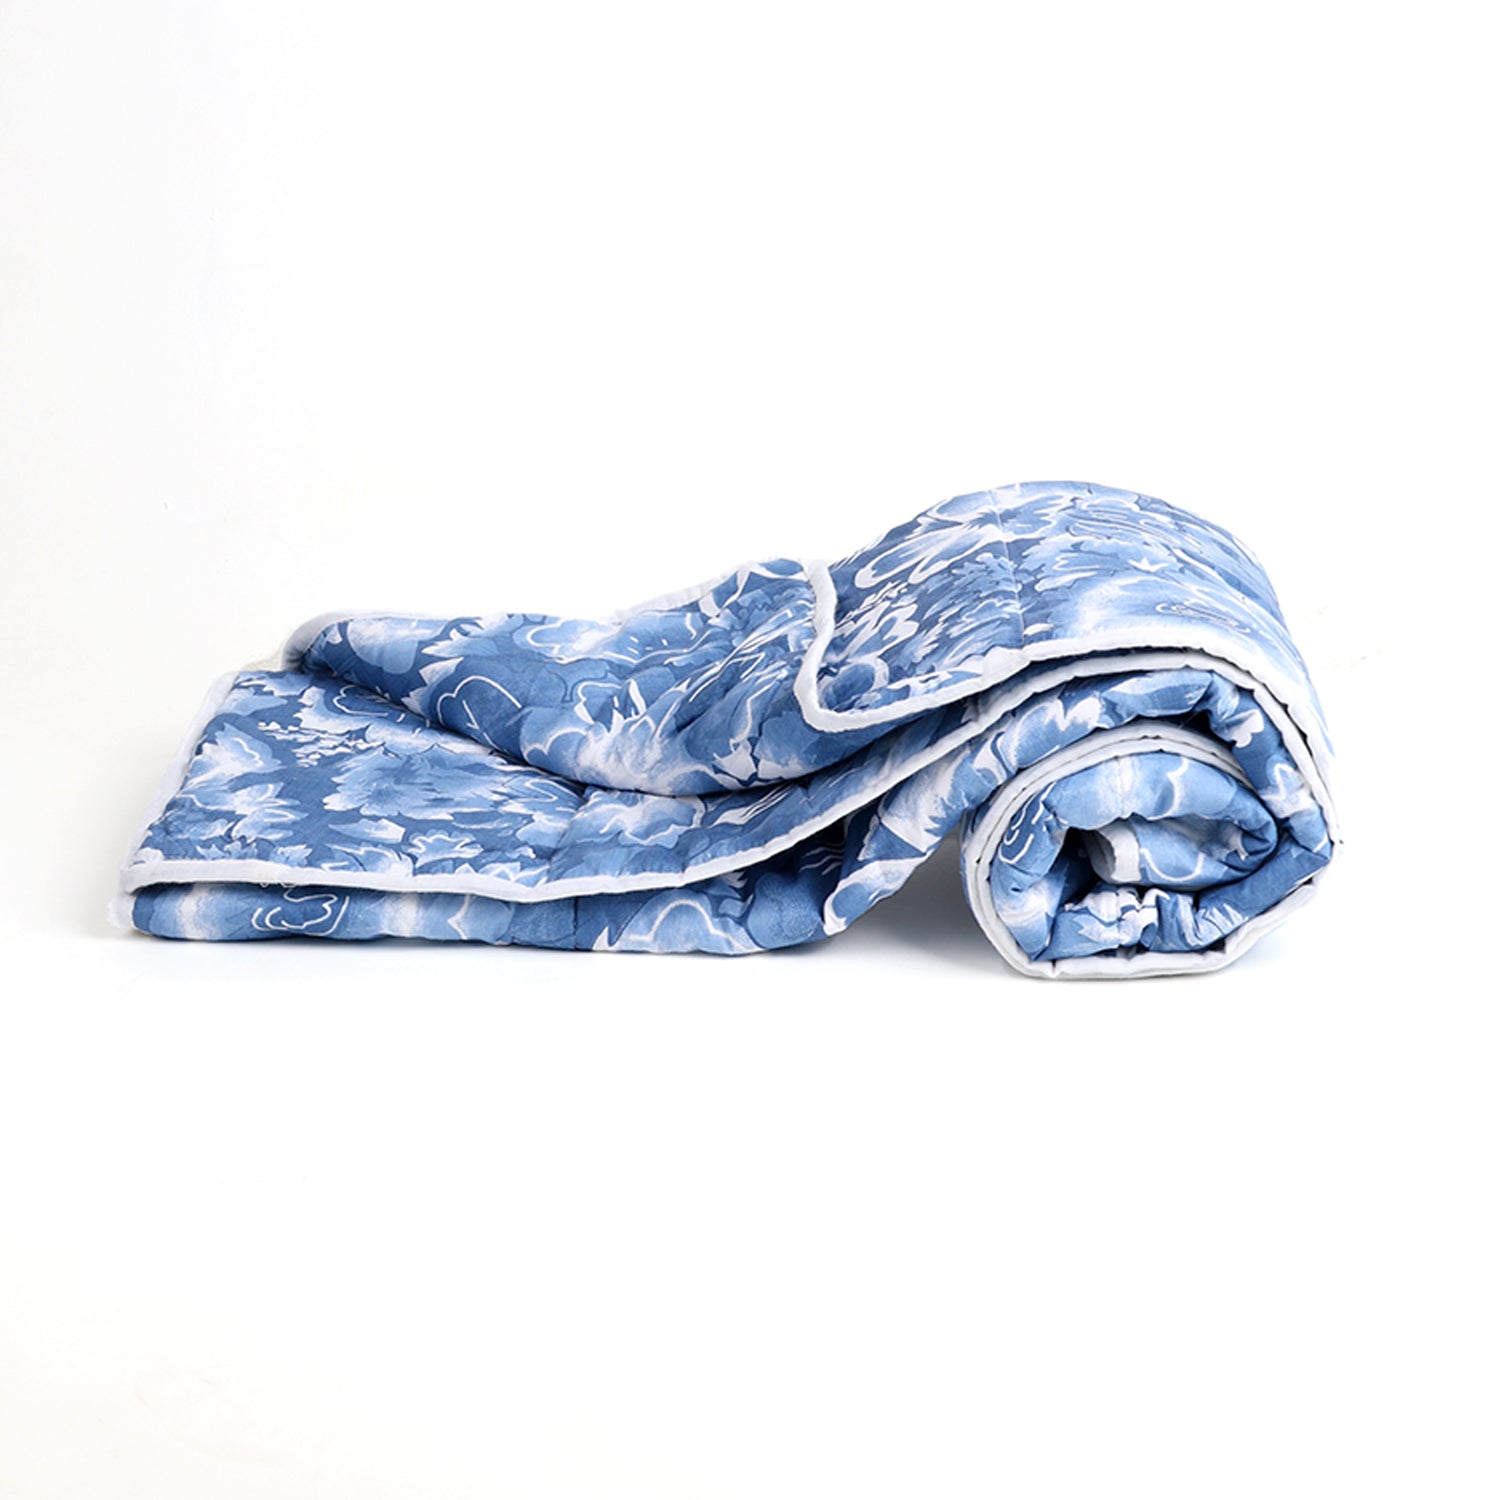 Baby Ac Quilt Blanket cum Bedspread- 0-3 Years - 100*120 cm - Blue